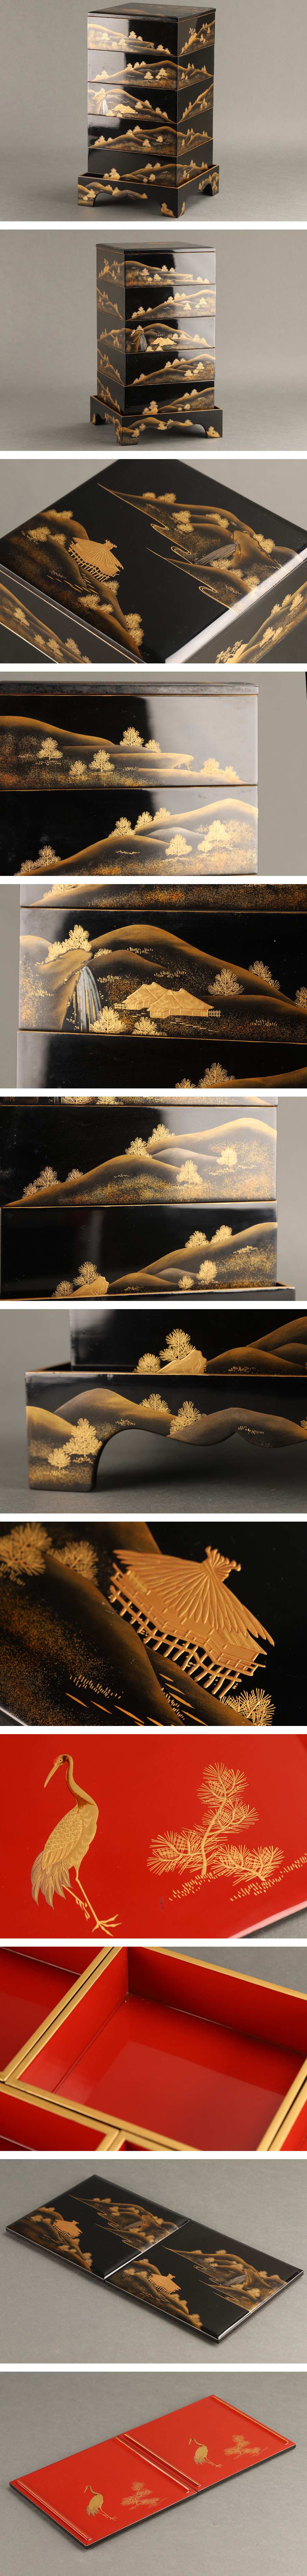 【展示特価】【琴》送料無料 木製漆器 黒塗本金蒔絵 風景画五段重箱 重台付 箱付 DC805 重箱